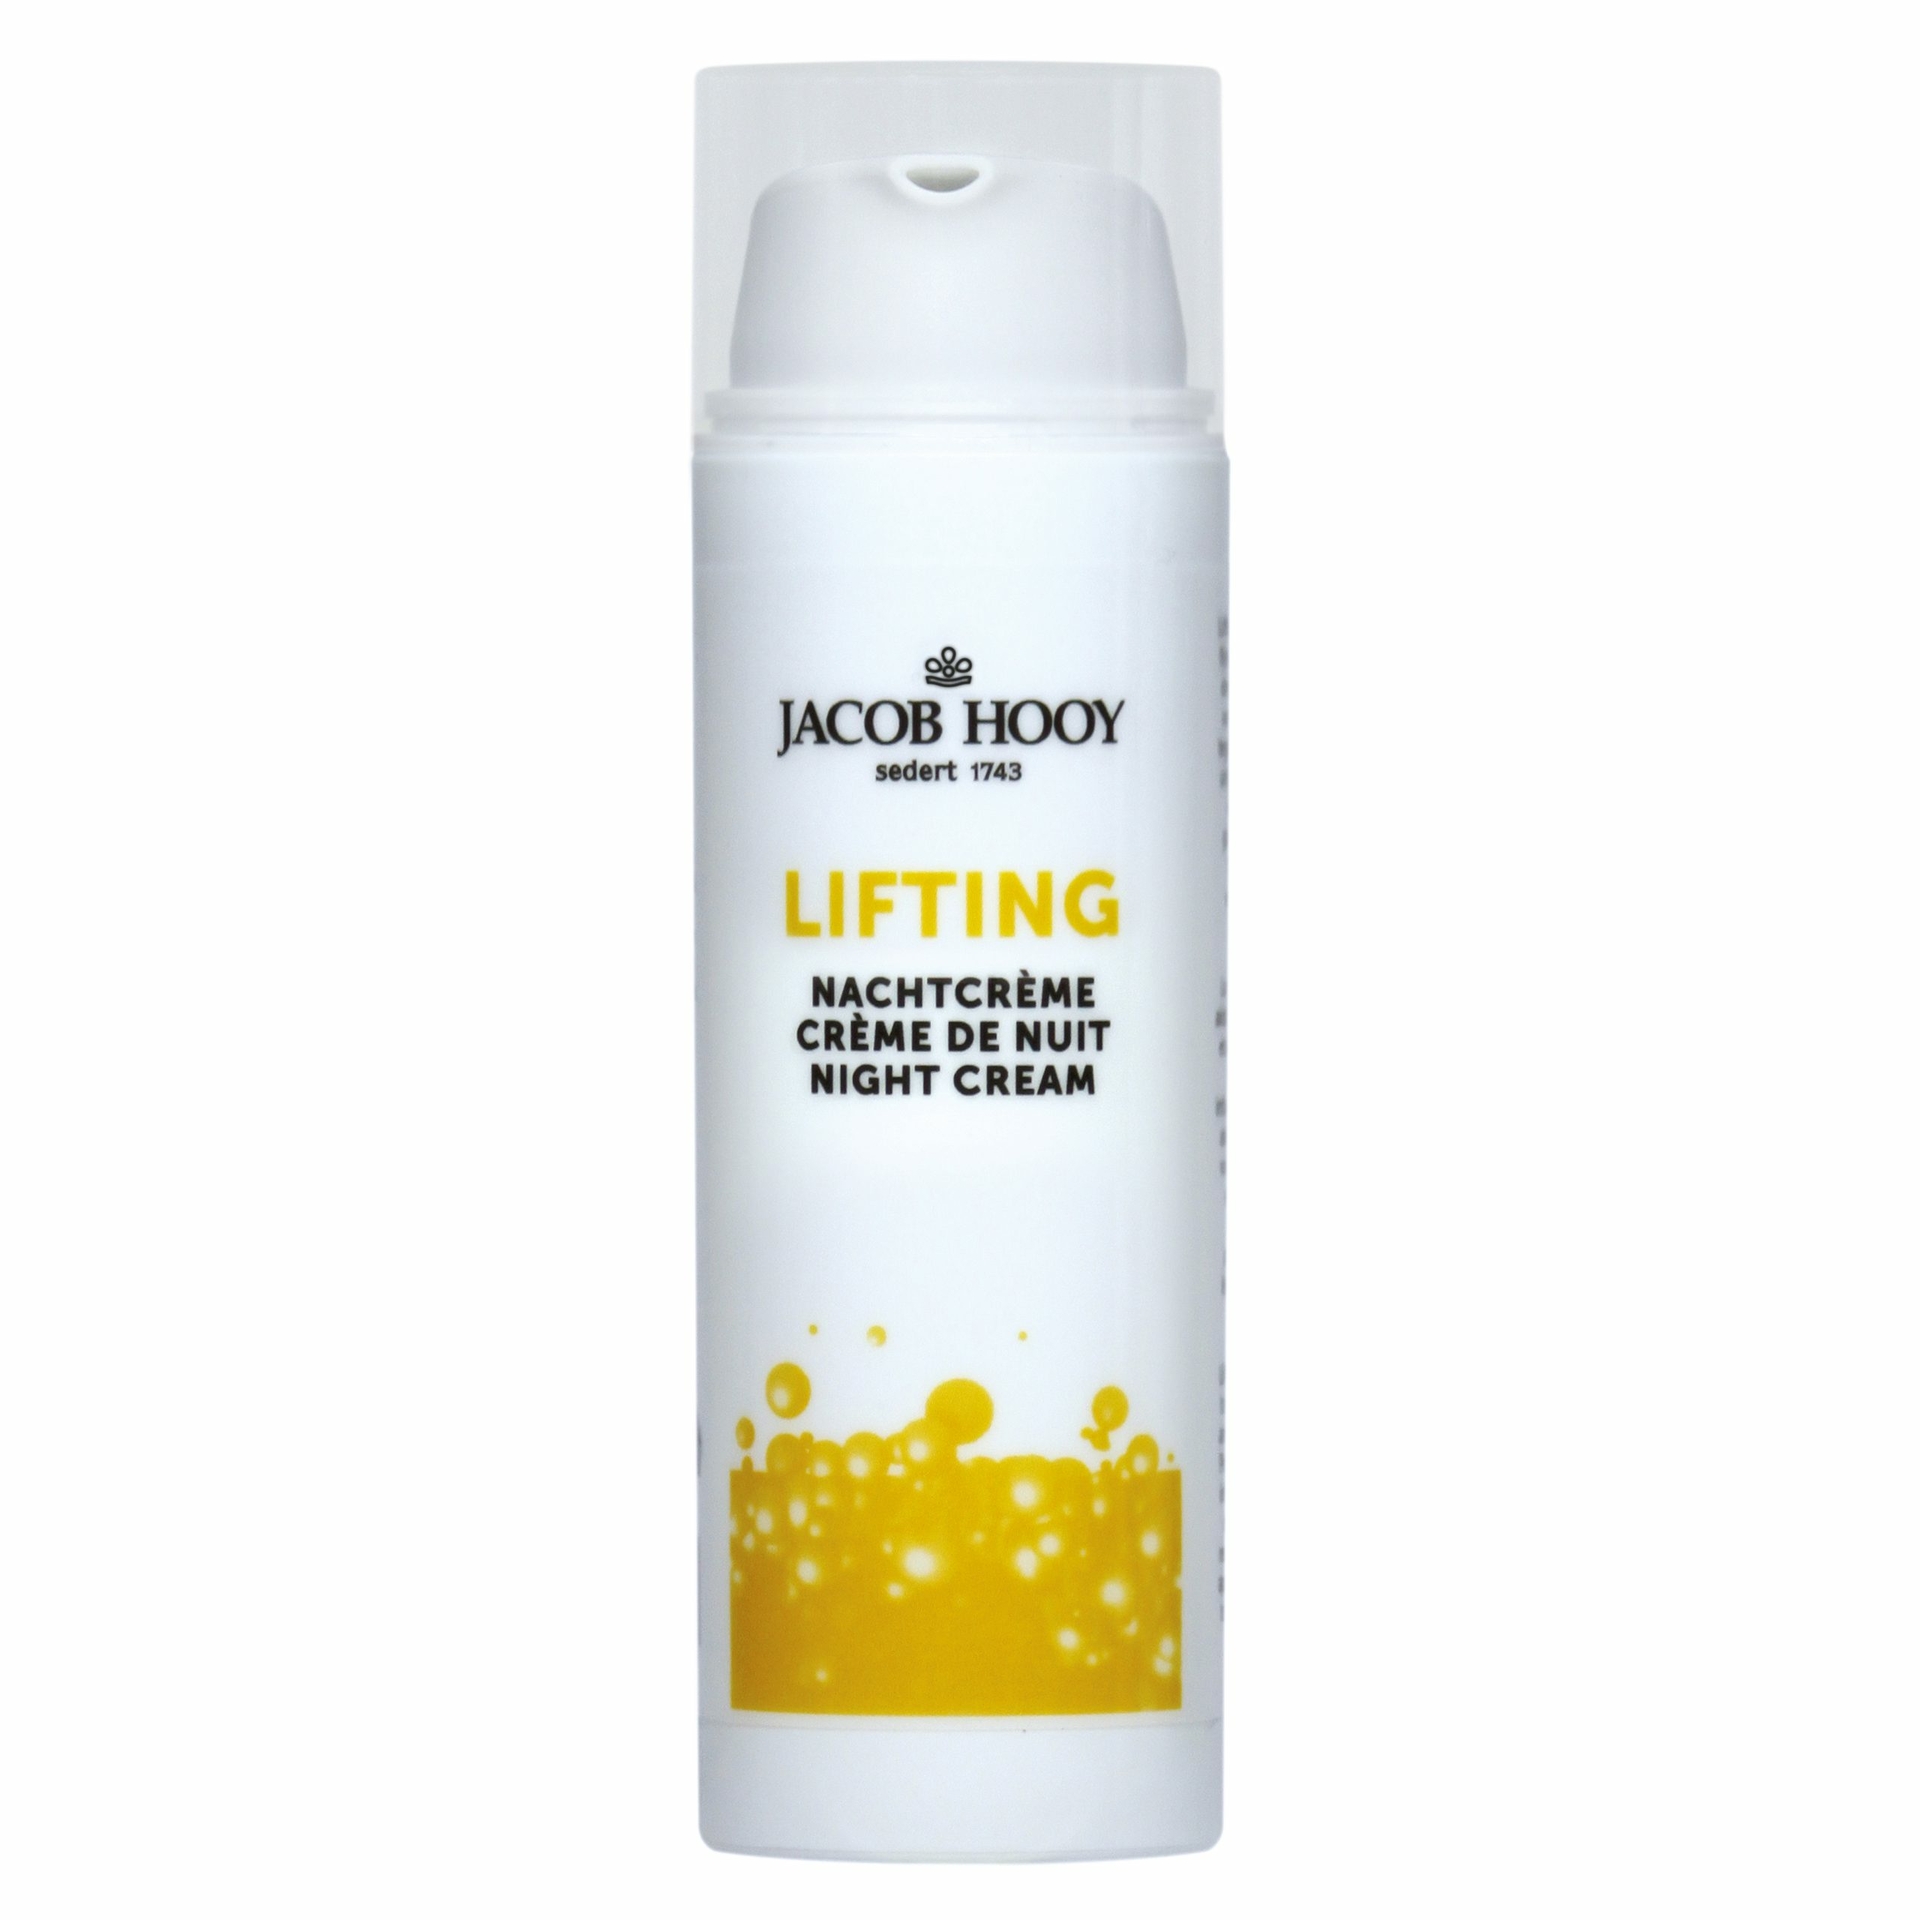 Lifting Nachtcrème - 50ml - Jacob Hooy